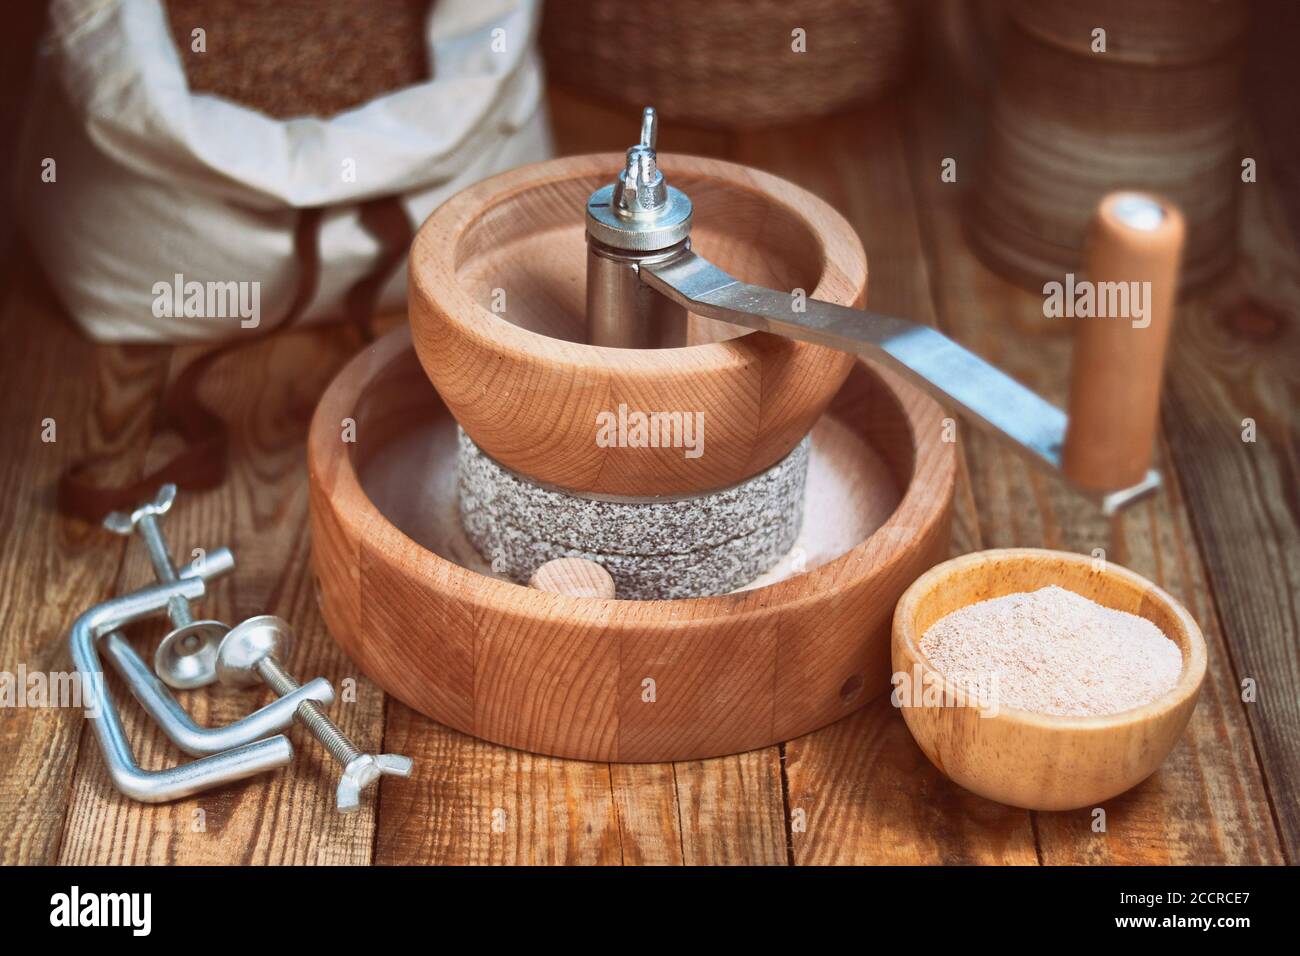 Getreidemühle - Manuelle Getreidemühle zum Handschleifen, auf einem Holztisch Stockfoto